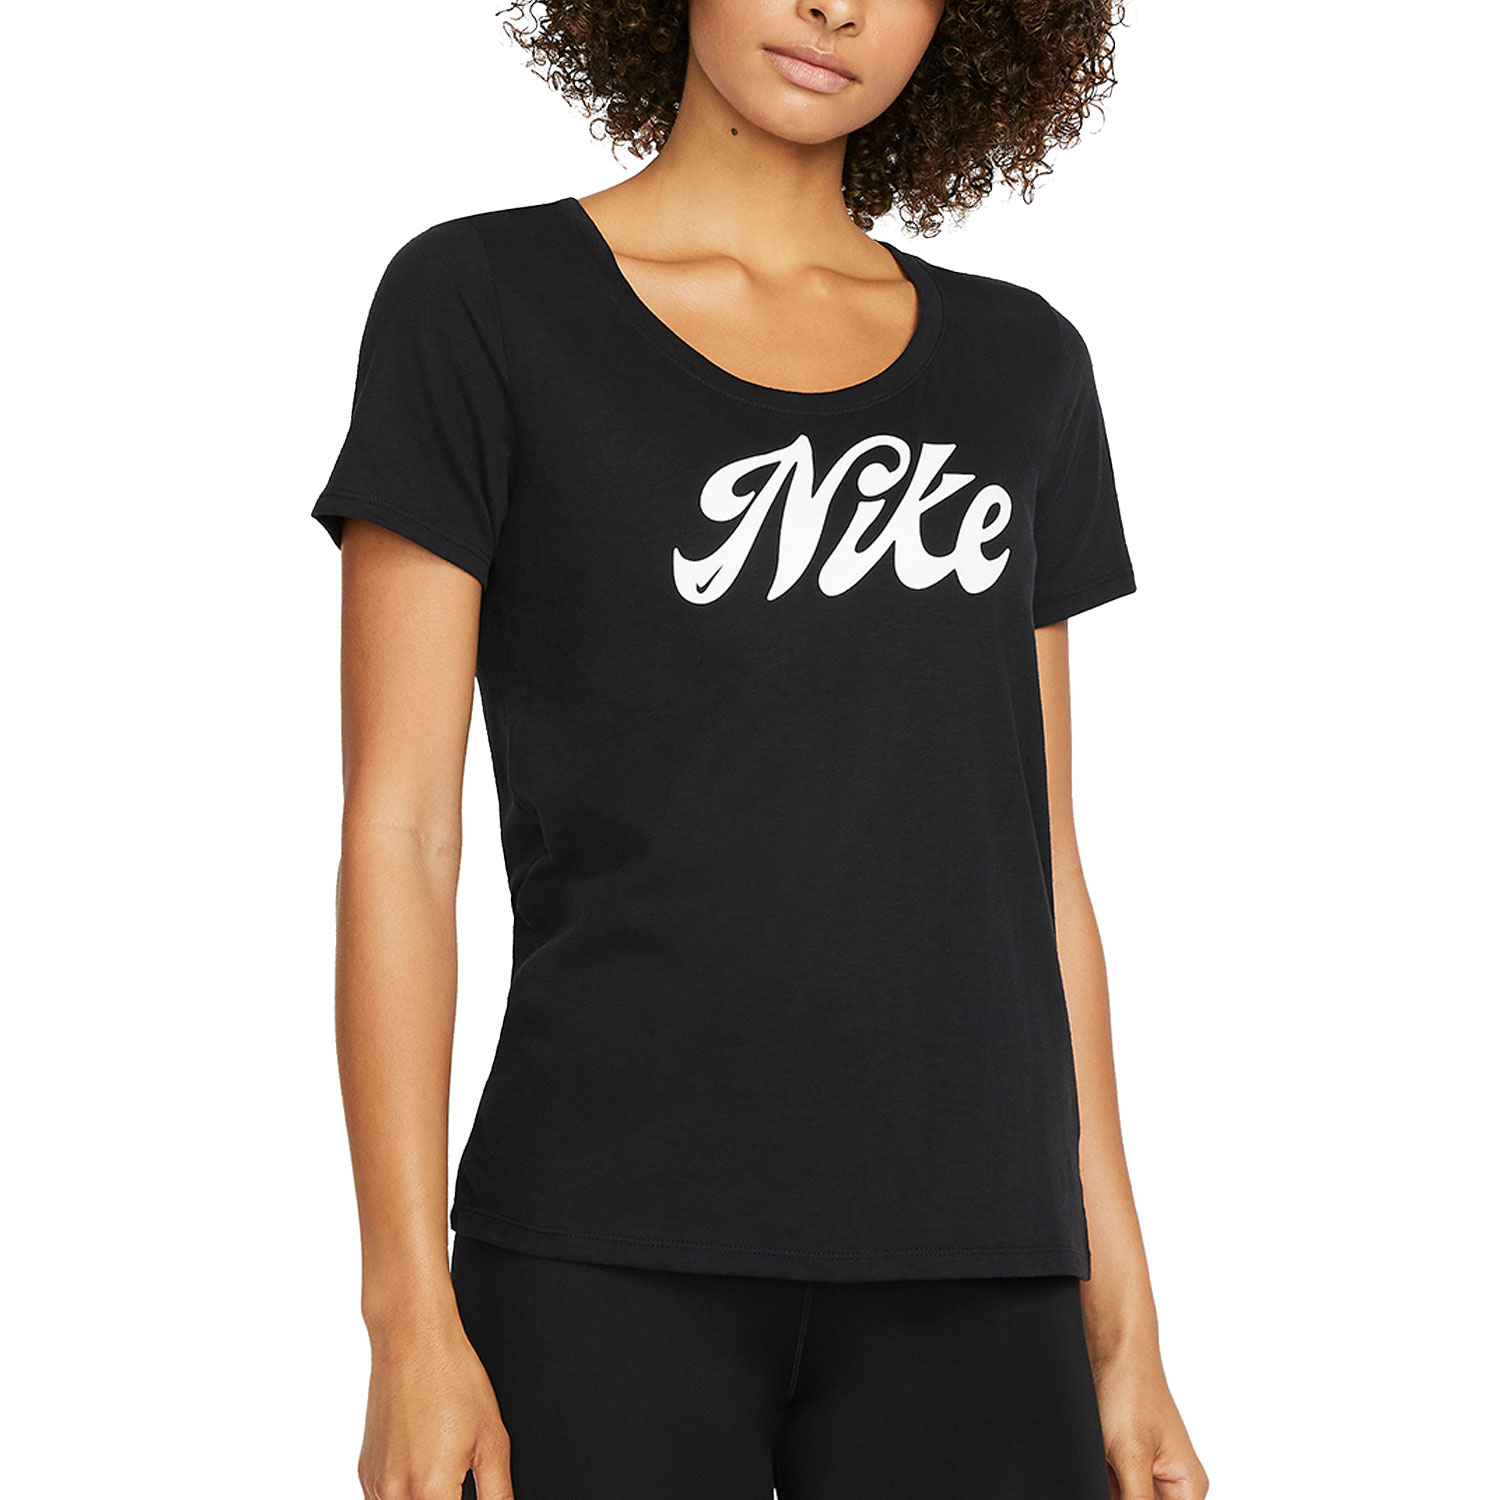 Nike Dri-FIT Script Women's Training T-Shirt - Black/White